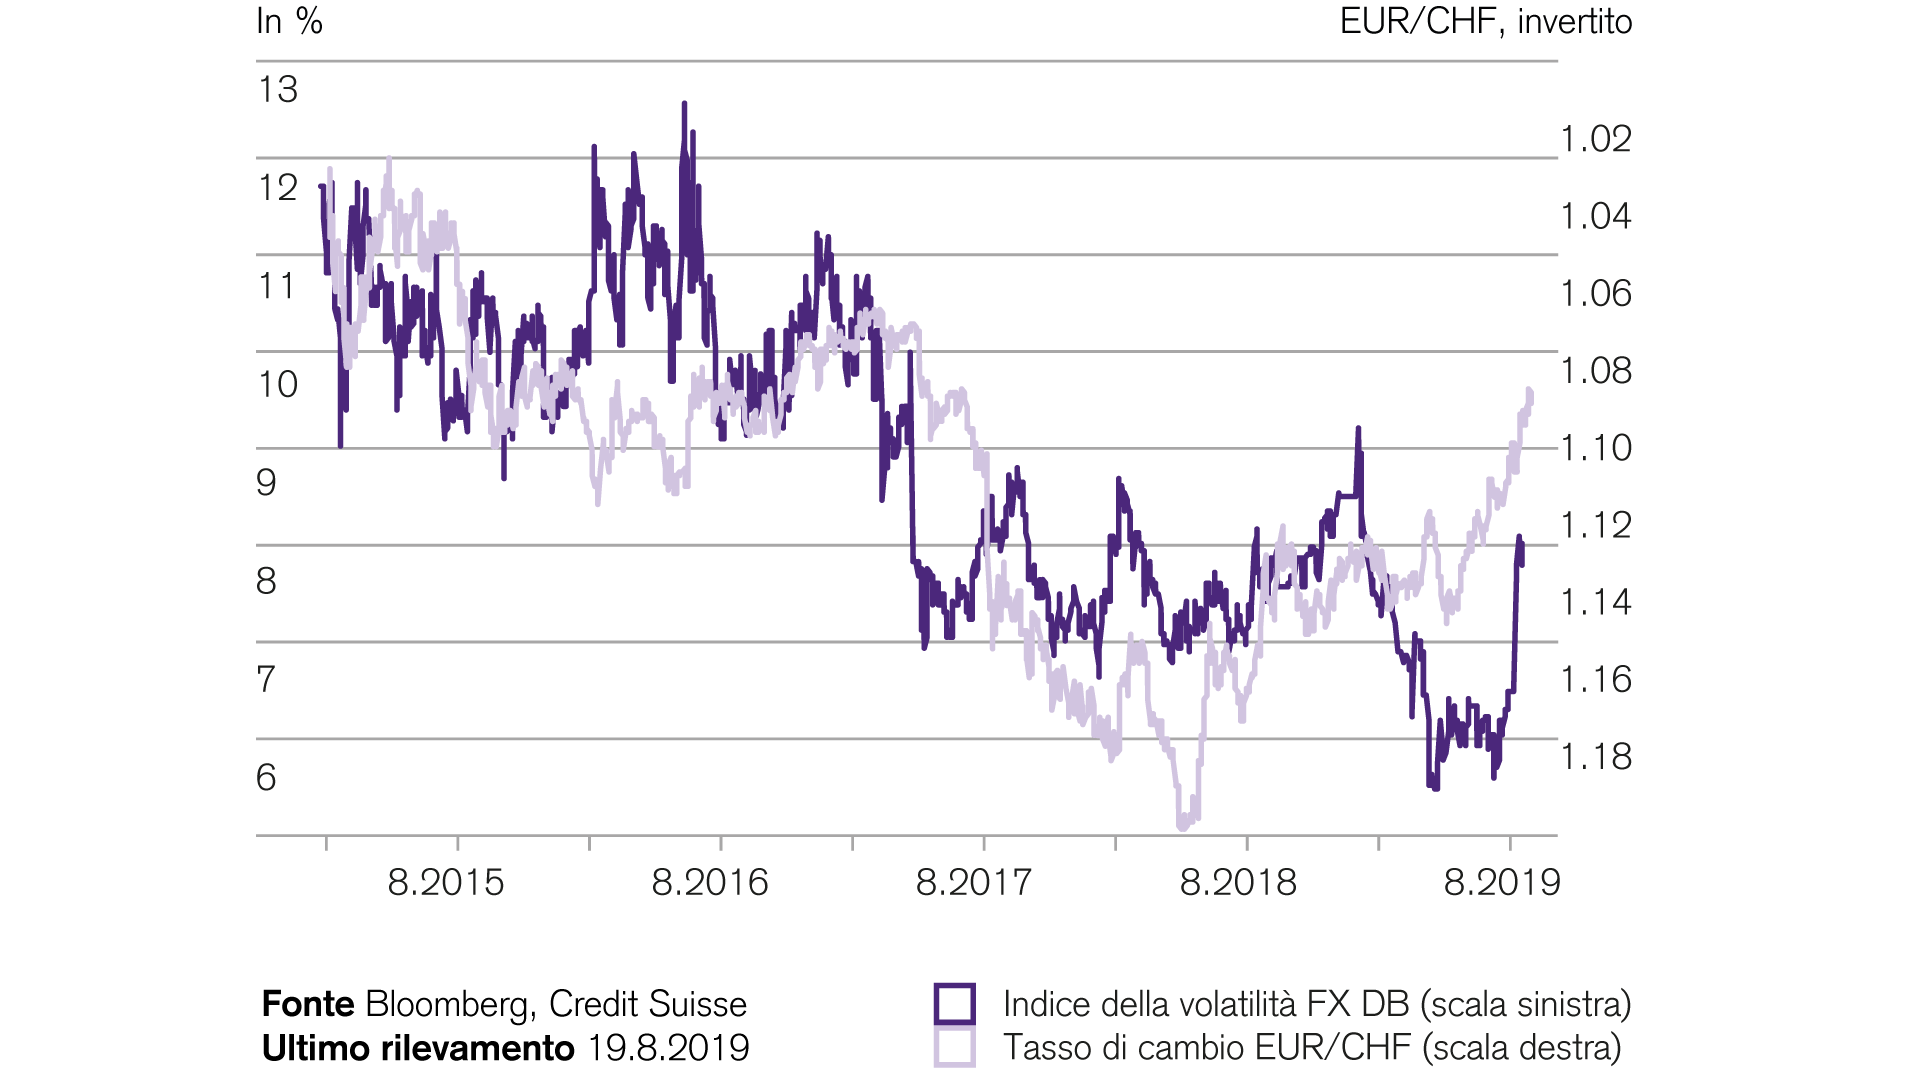 Franco svizzero piu forte nel contesto di maggiore volatilita